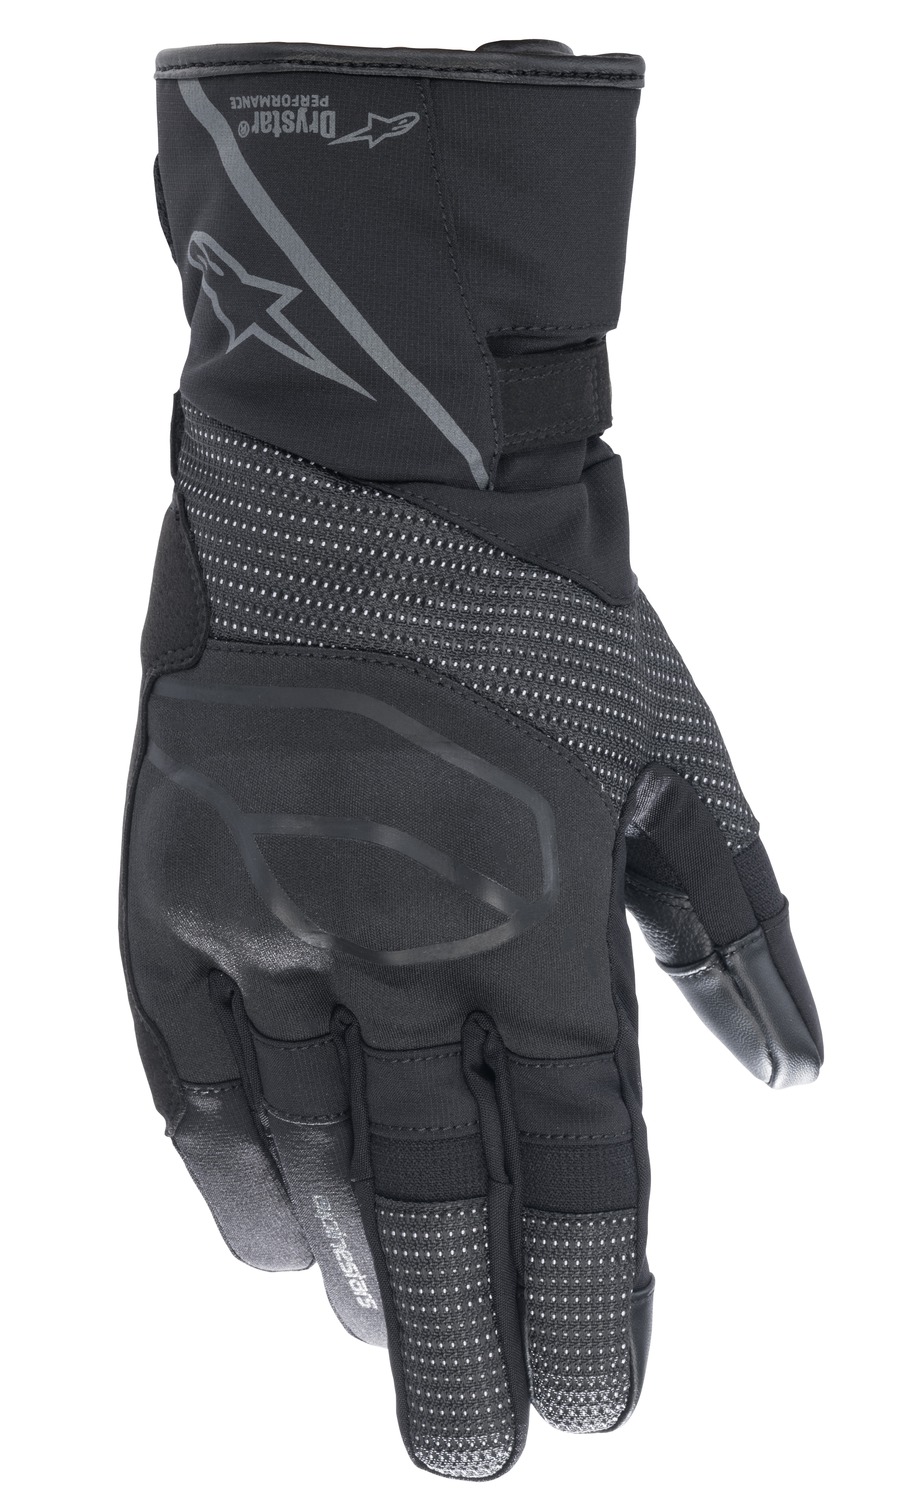 gloves STELLA ANDES DRYSTAR 2022, ALPINESTARS, (black/anthracite)